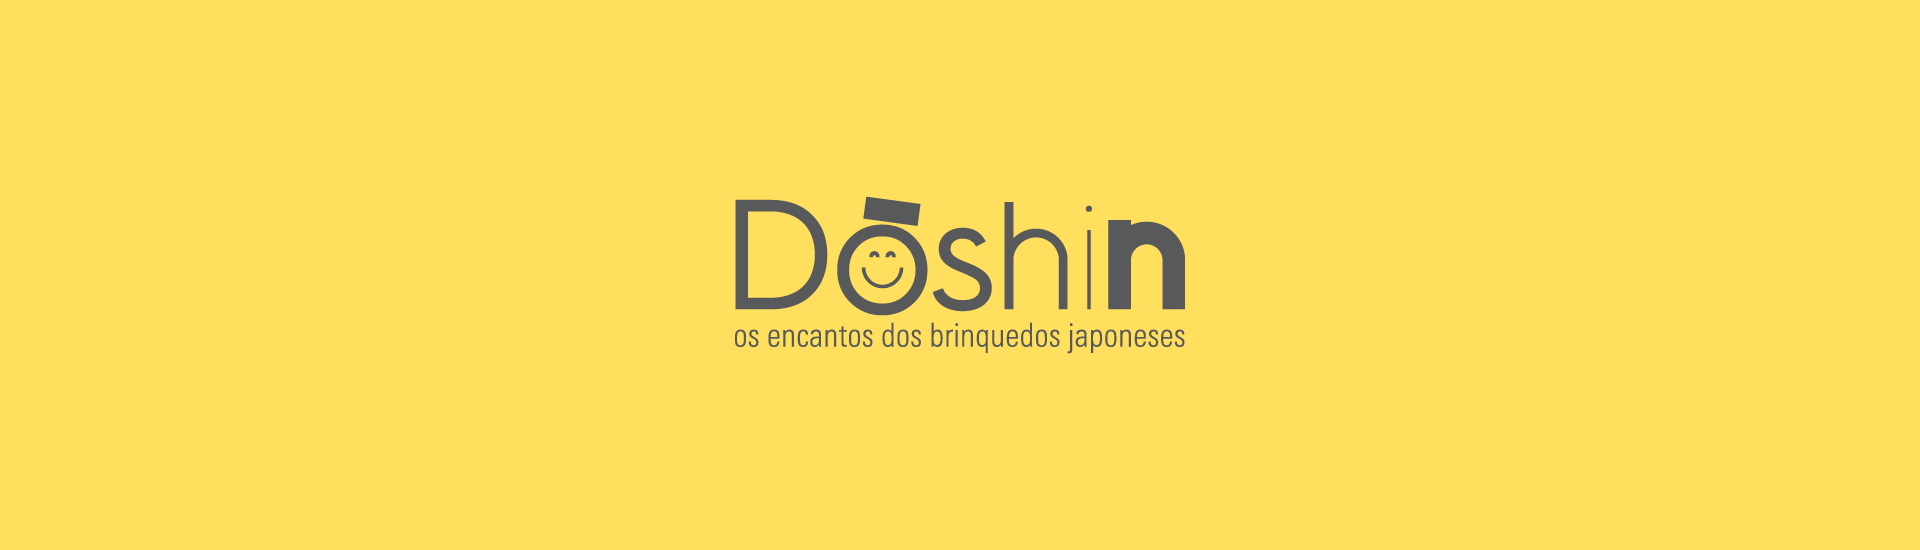 Dōshin: os encantos dos brinquedos japoneses. Fundo da imagem é amarelo.